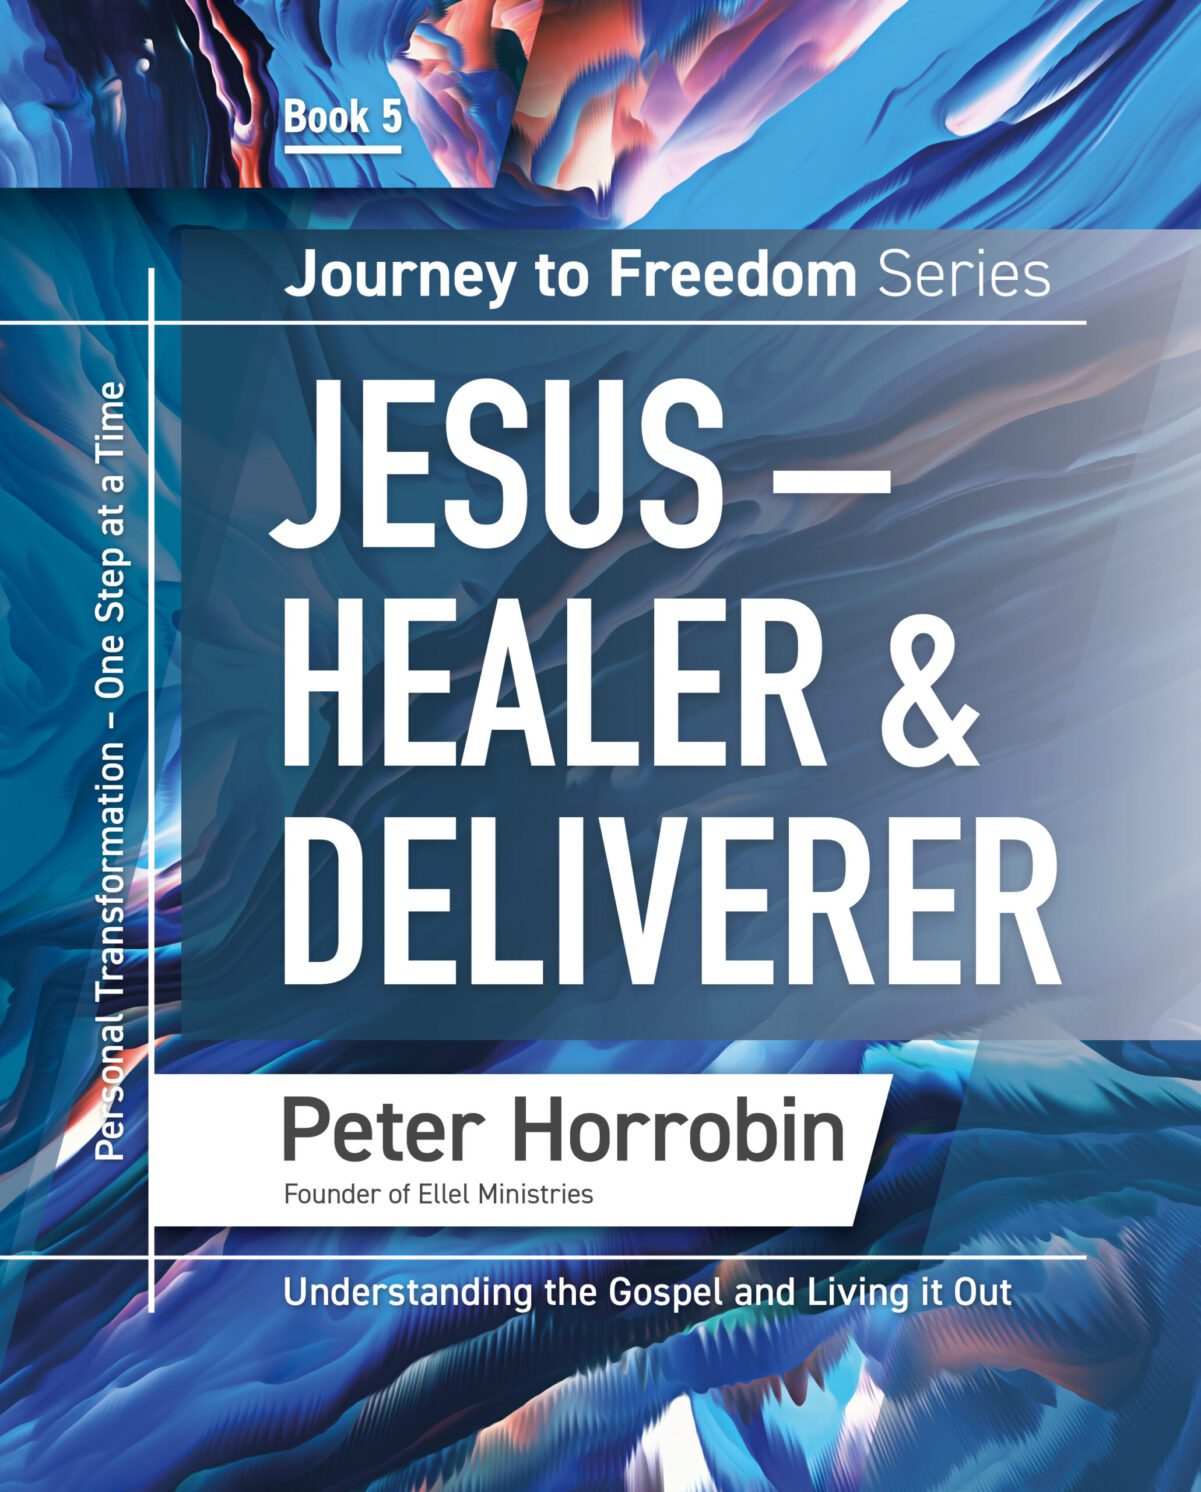 Journey to Freedom Book 5 – Jesus, Healer & Deliverer